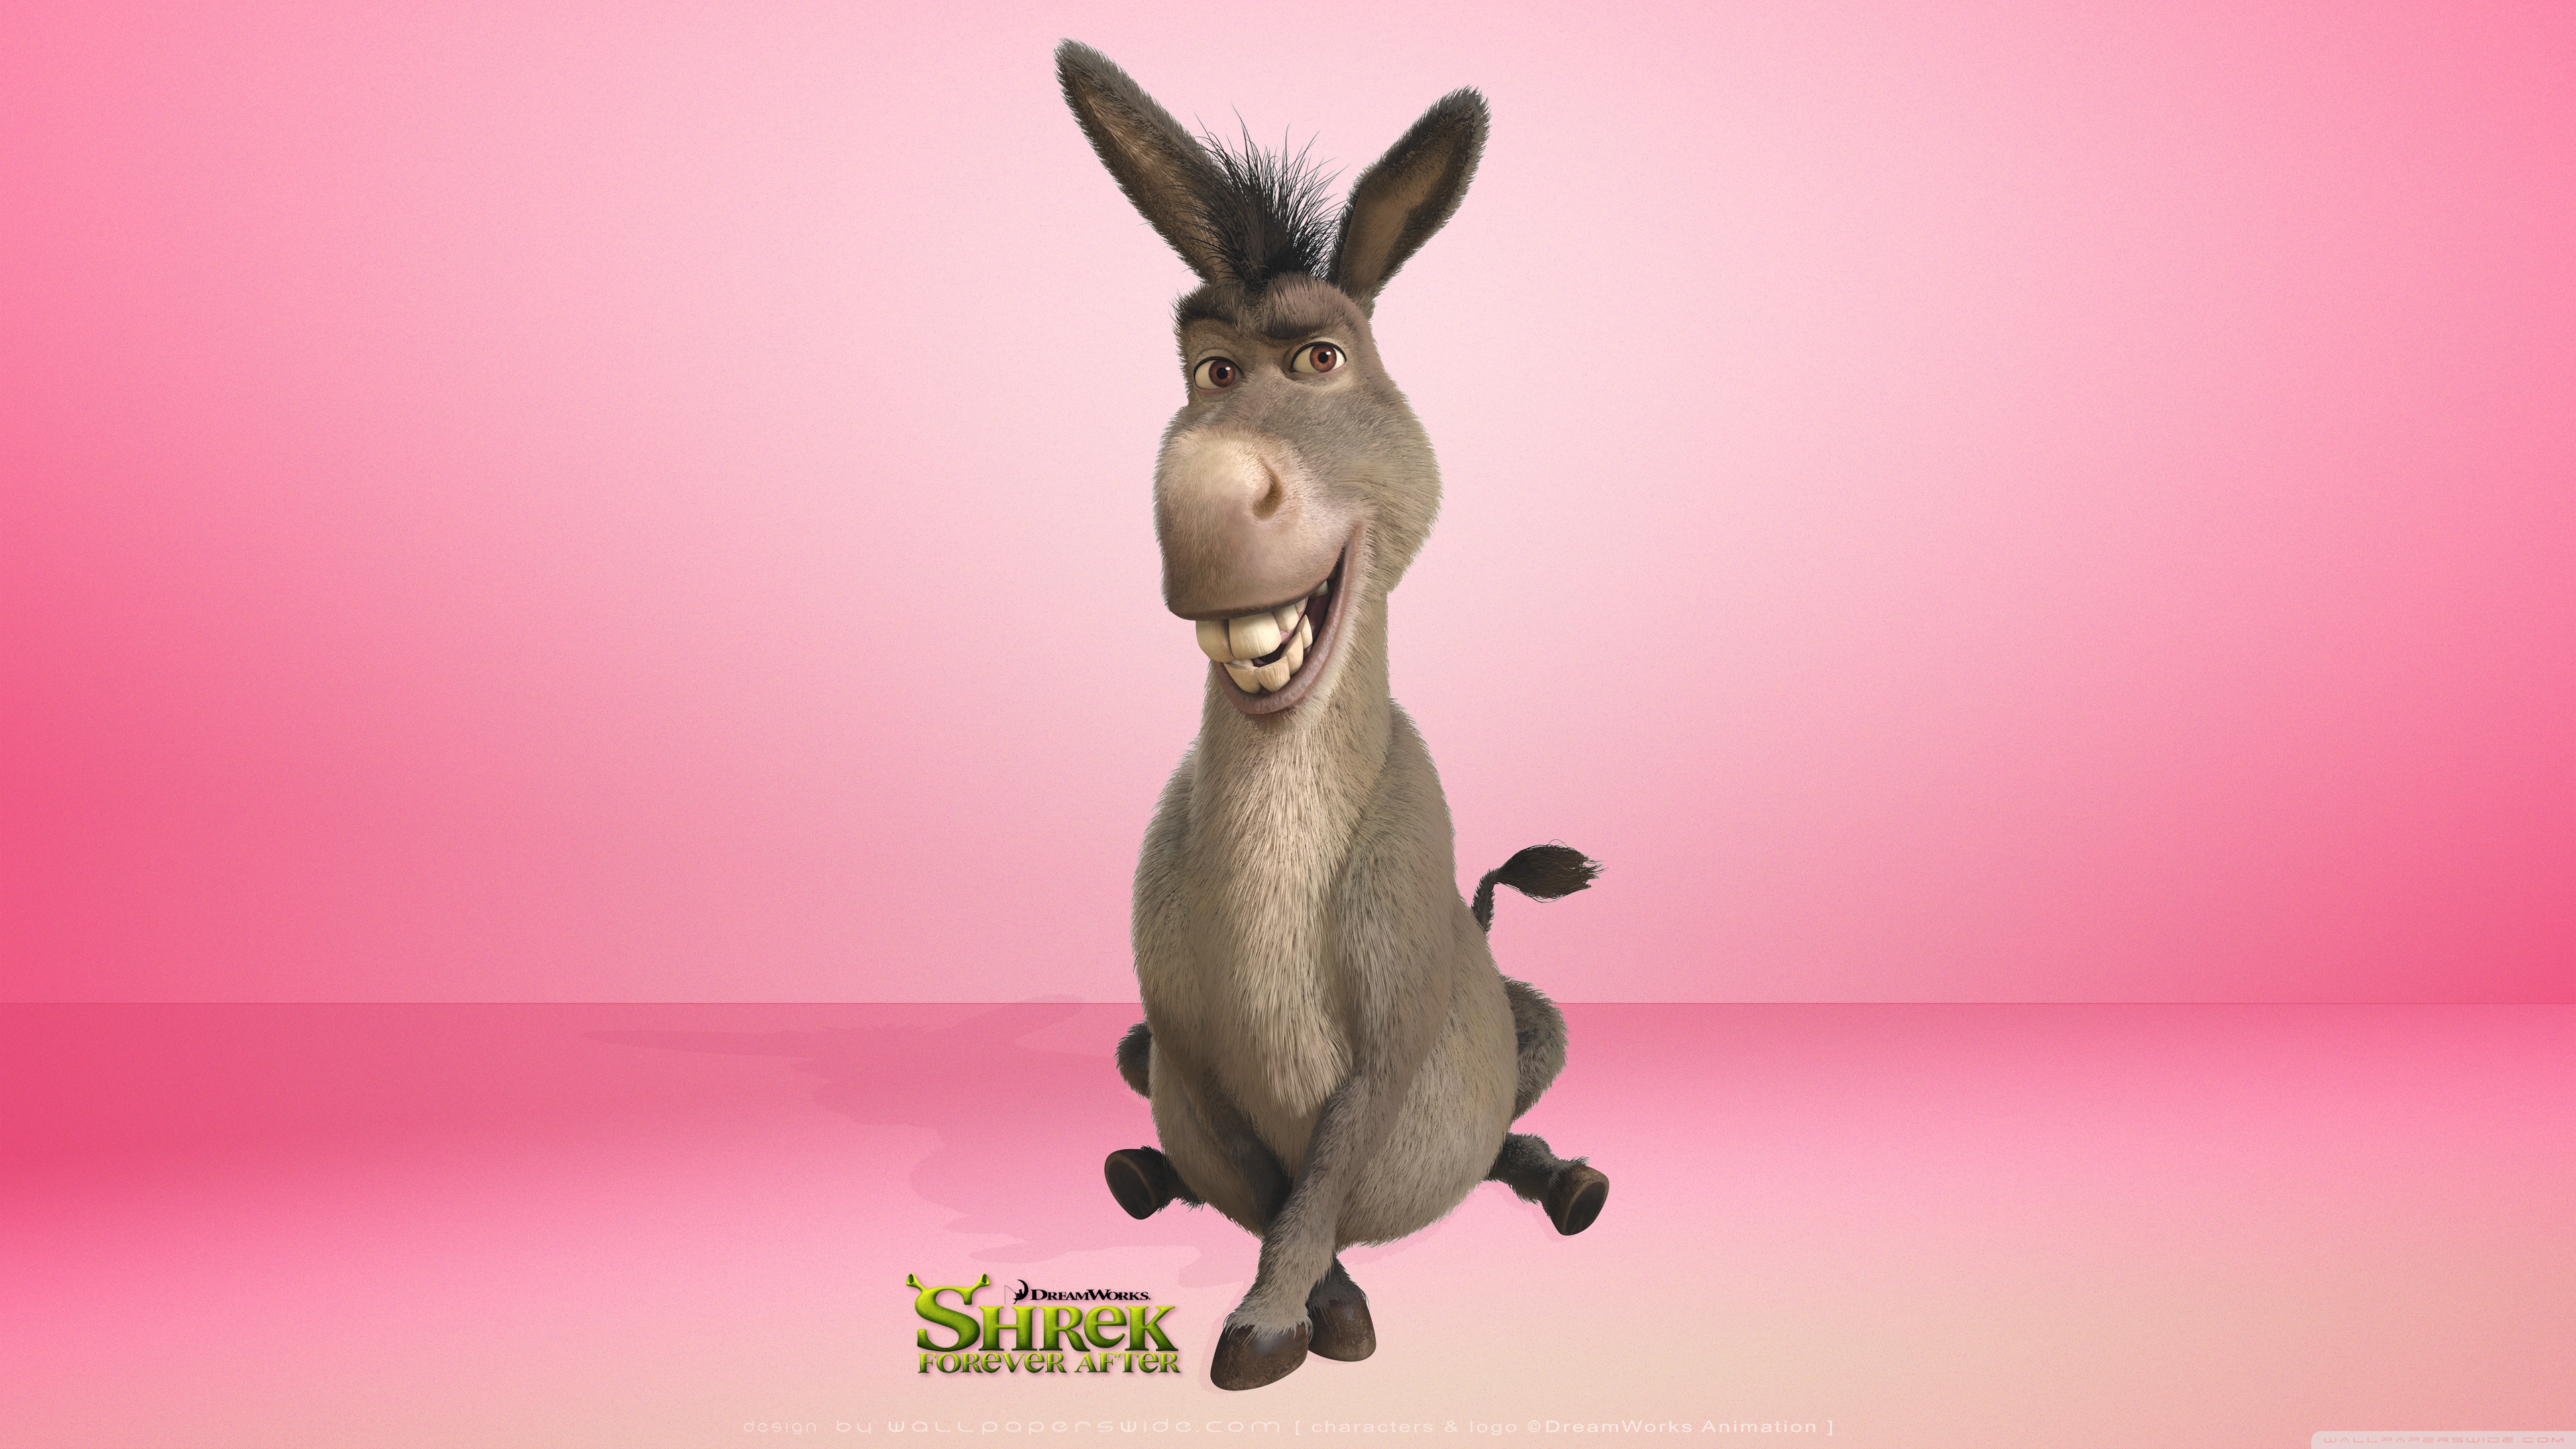 Donkey Shrek Forever After Ultra Hd Desktop Background Wallpaper